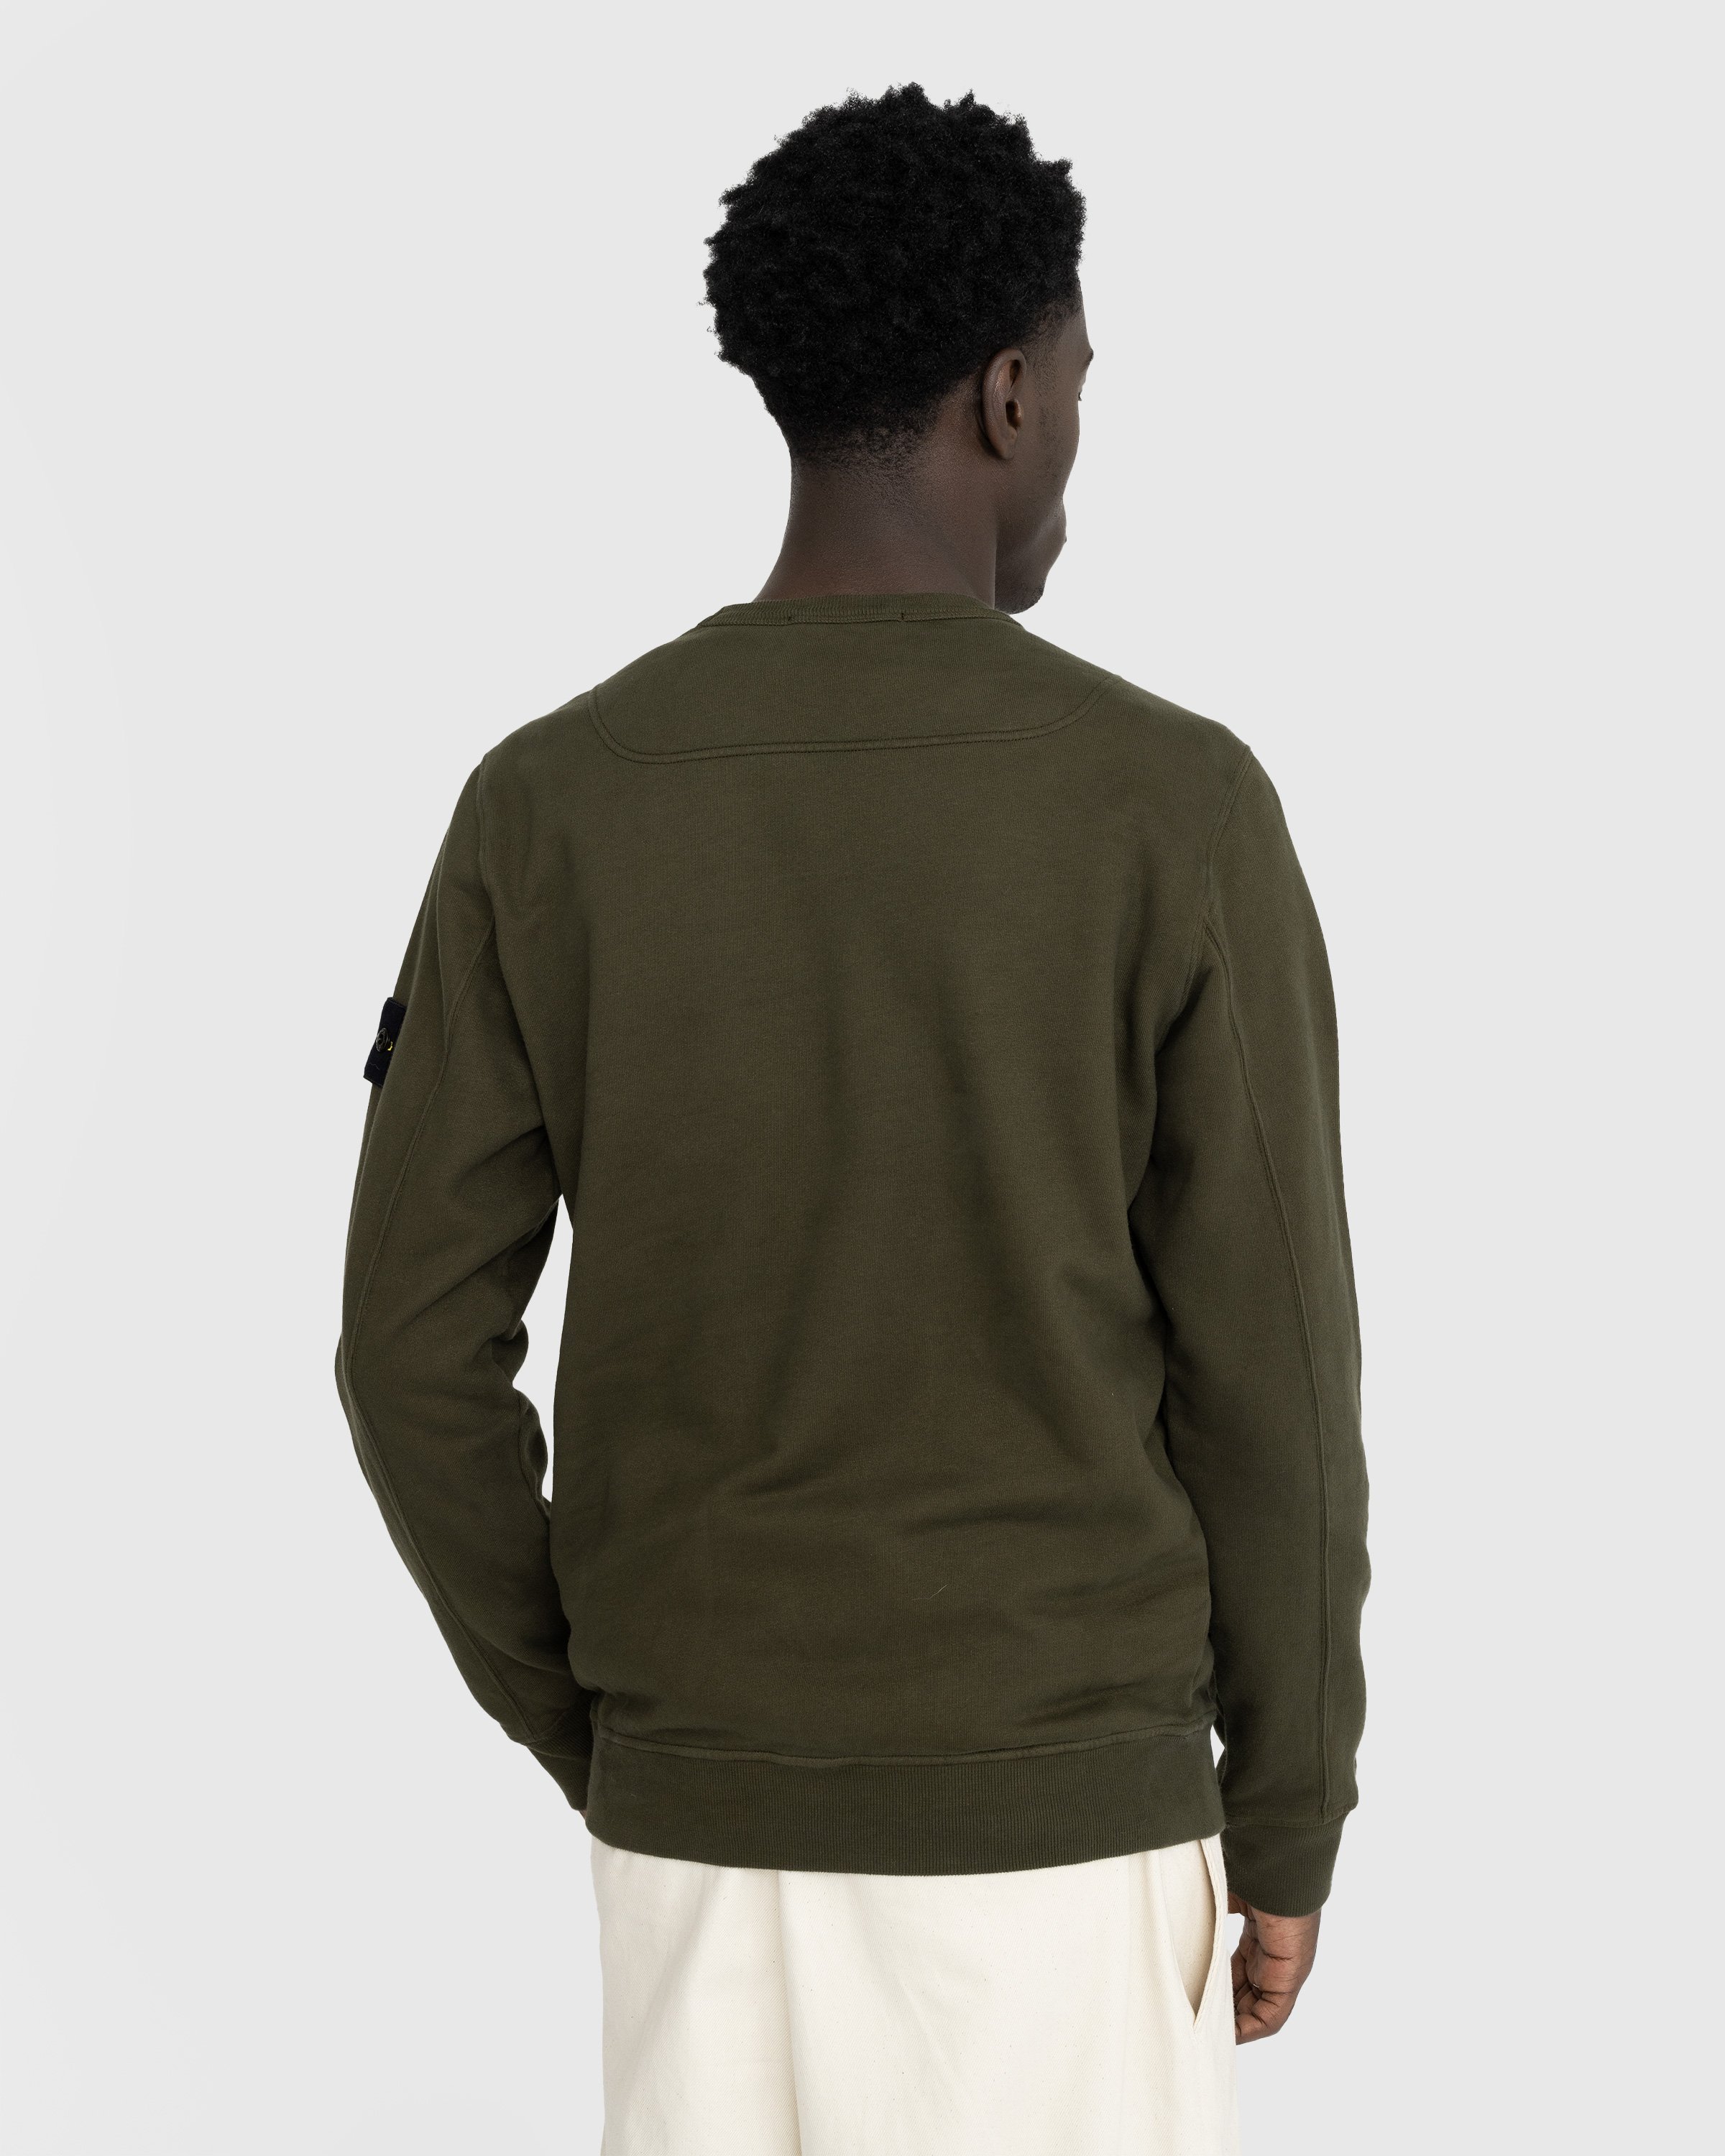 Stone Island - Garment-Dyed Brushed Fleece Crewneck Olive - Clothing - Green - Image 3